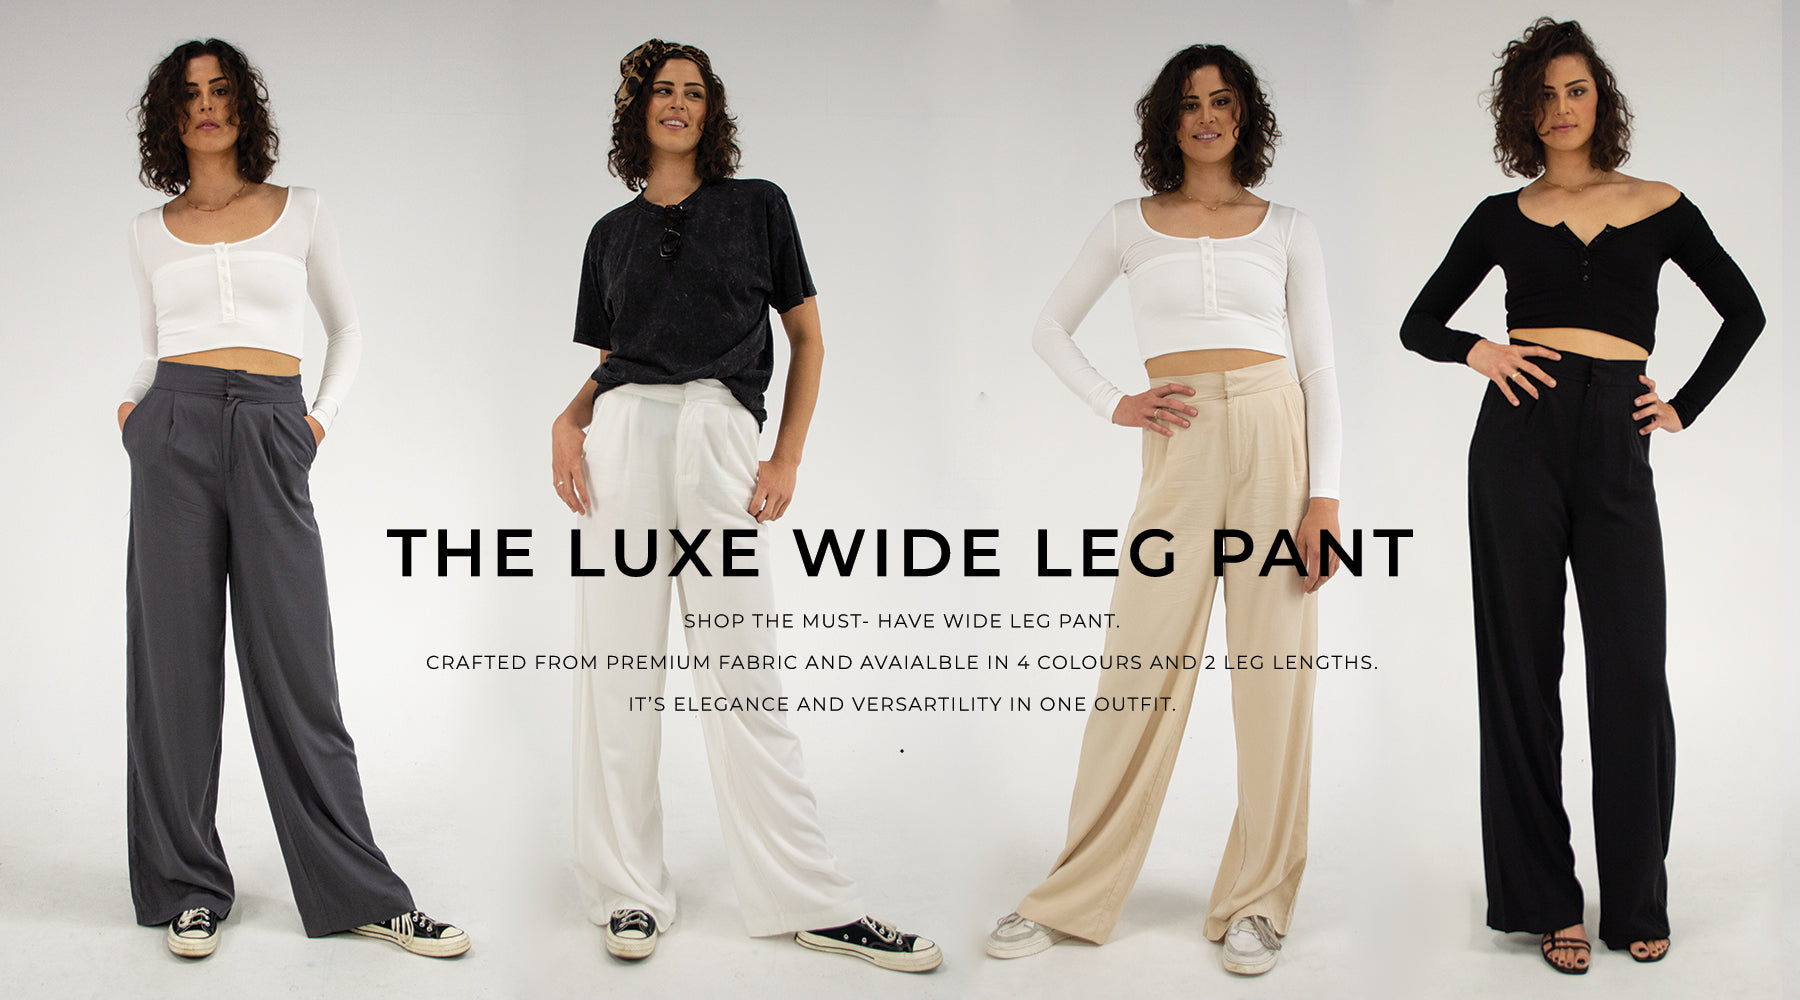 Tall women's fashion & clothing - Long Length Women's pants